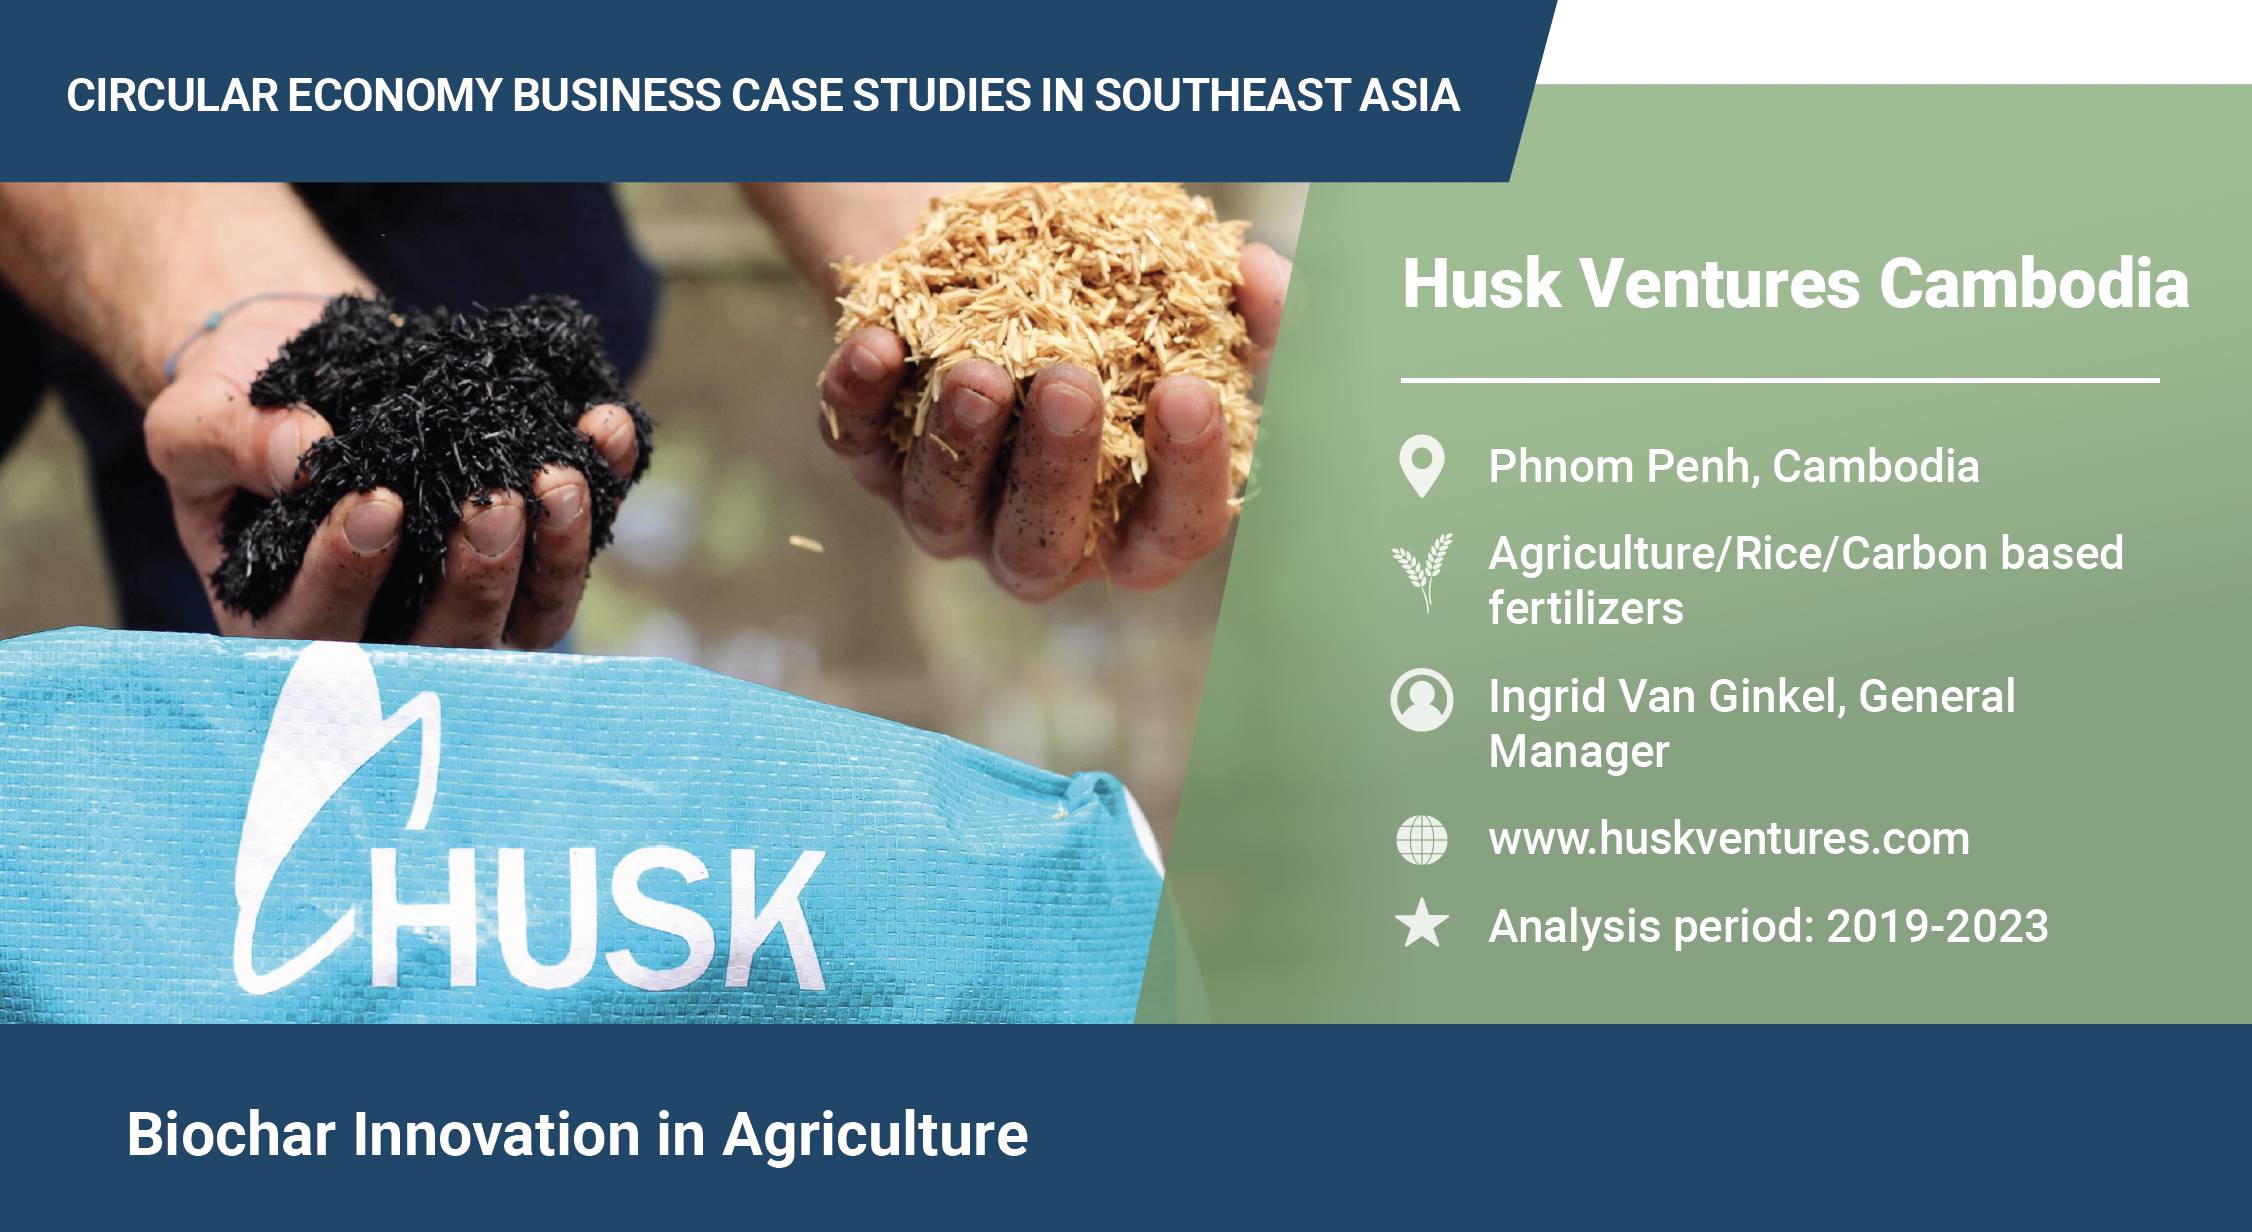 Husk Ventures Cambodia